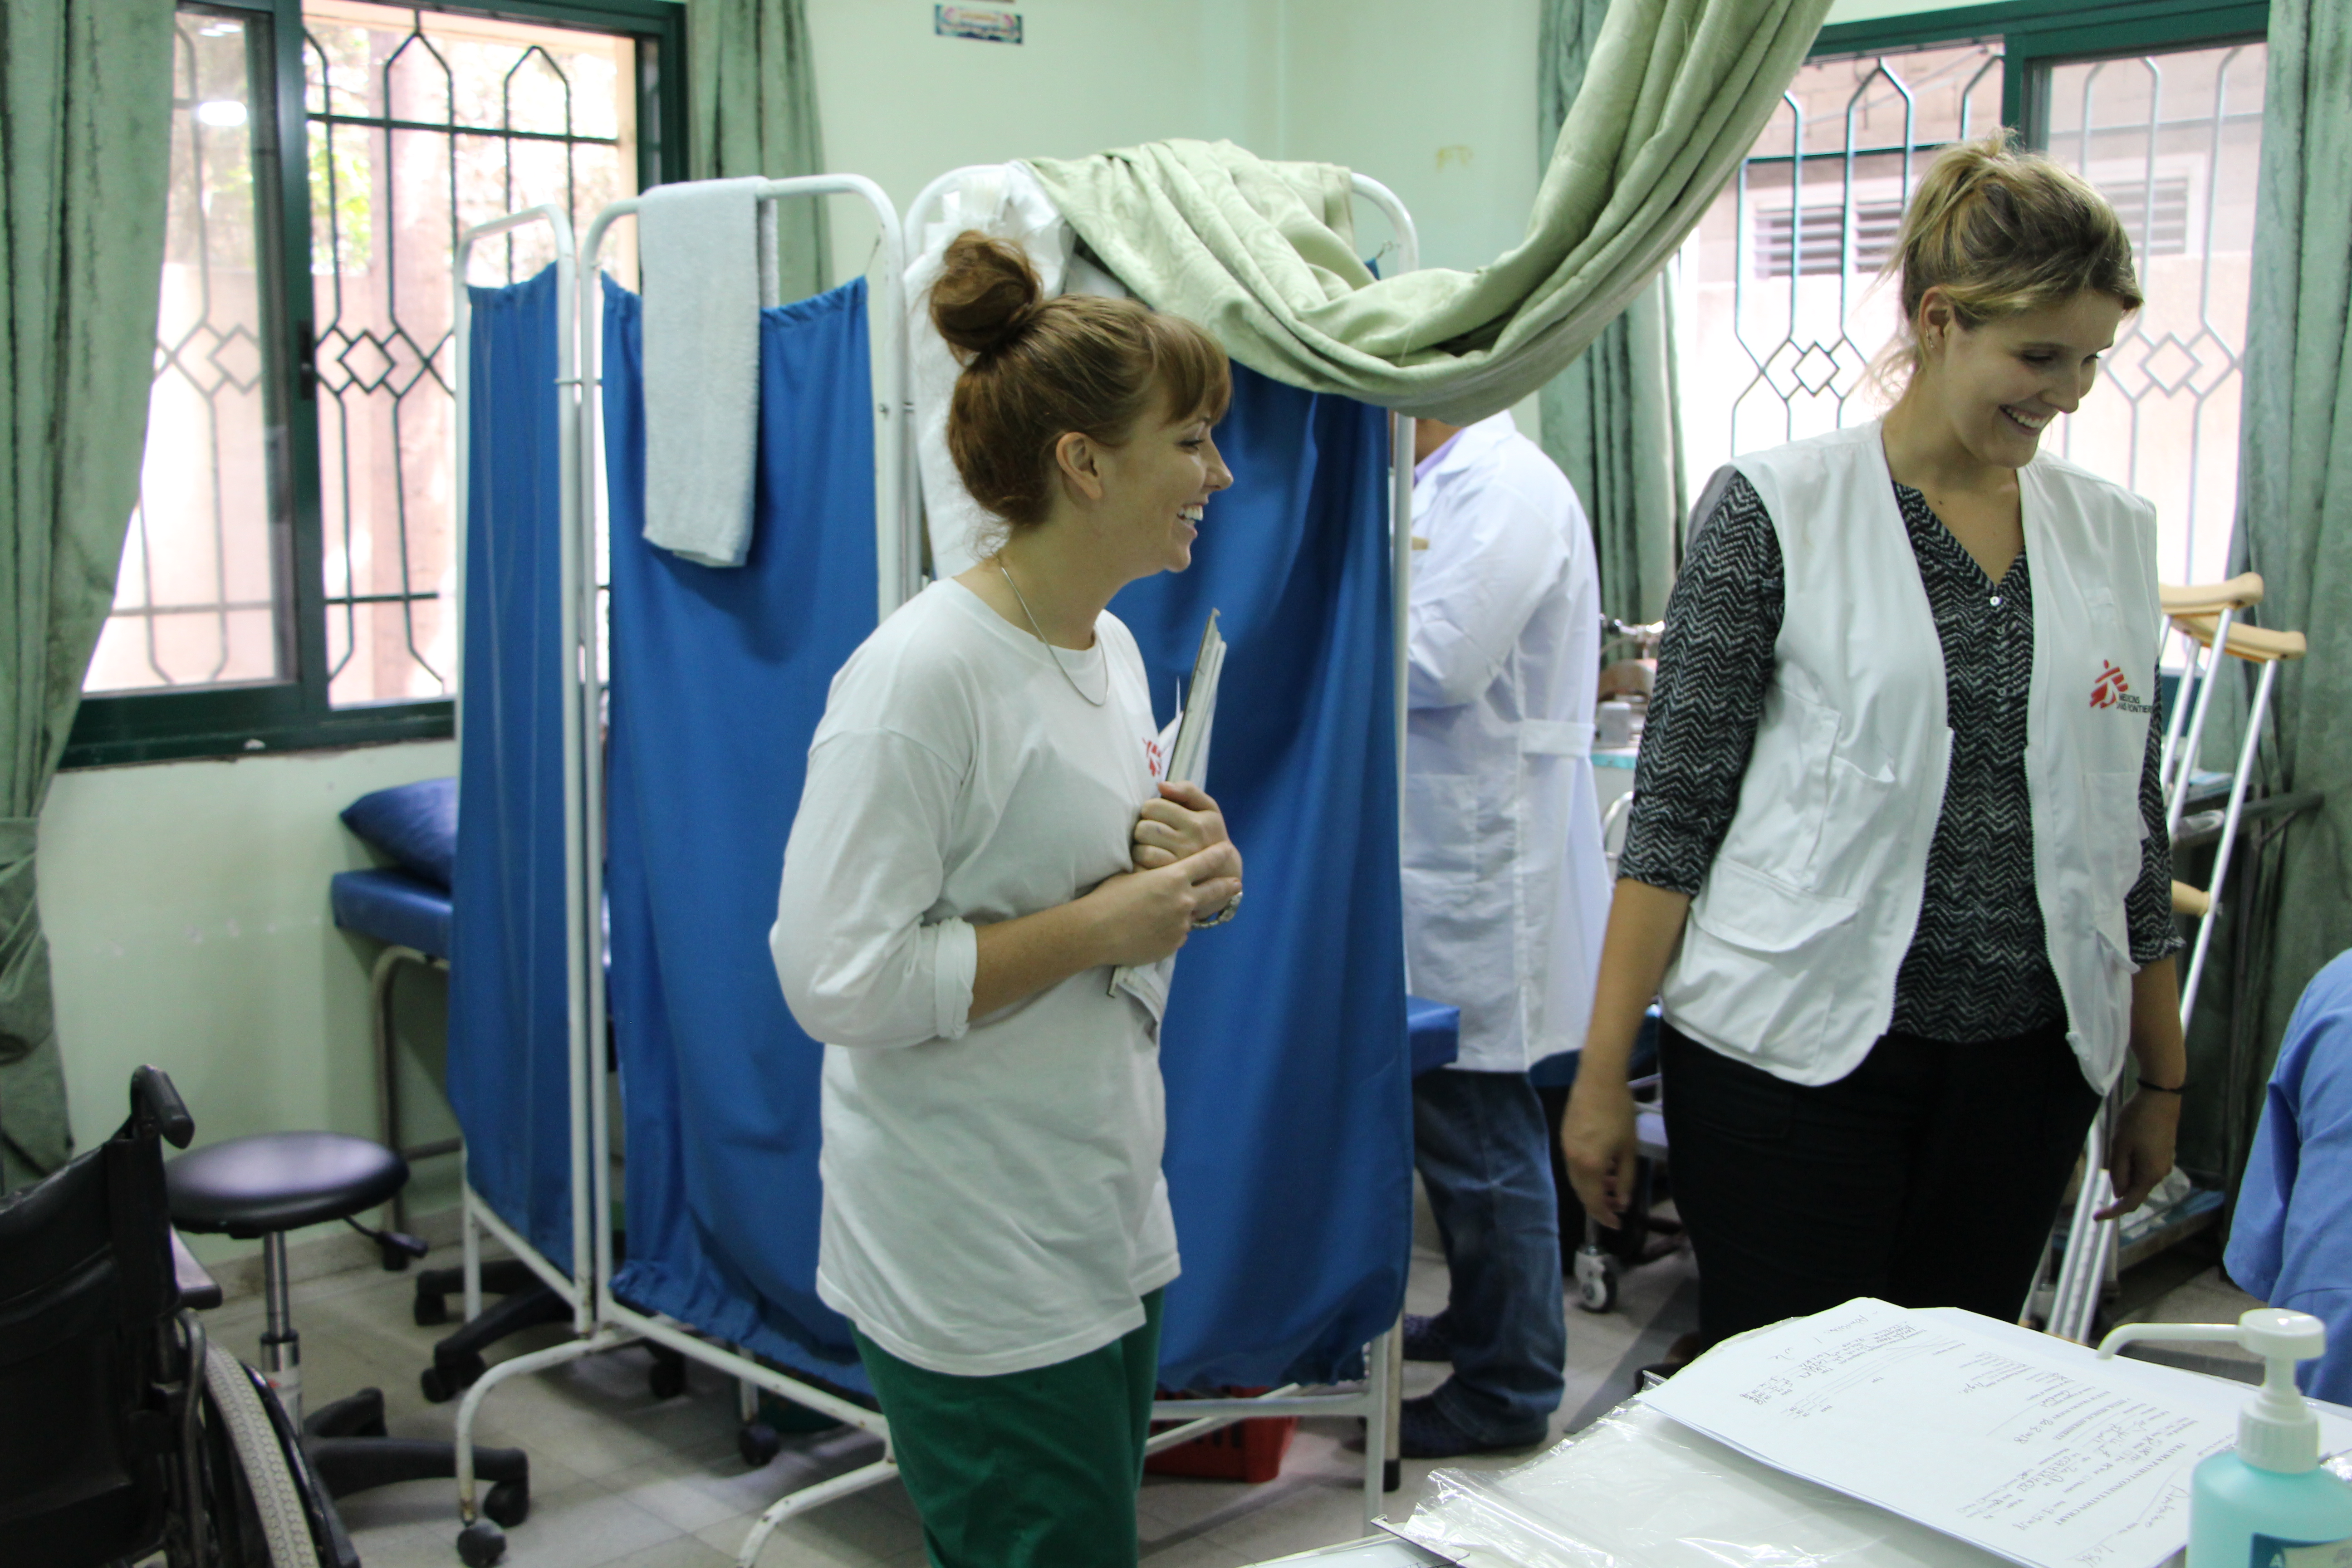 Natalie Park, infirmière de MSF, et Elise Tauveron, kinésithérapeute, dans l’une des cliniques post-opératoires de MSF à Gaza, où elles proposent des soins infirmiers, de kinésithérapie et de rééducation aux patients souffrant de blessures par balle.